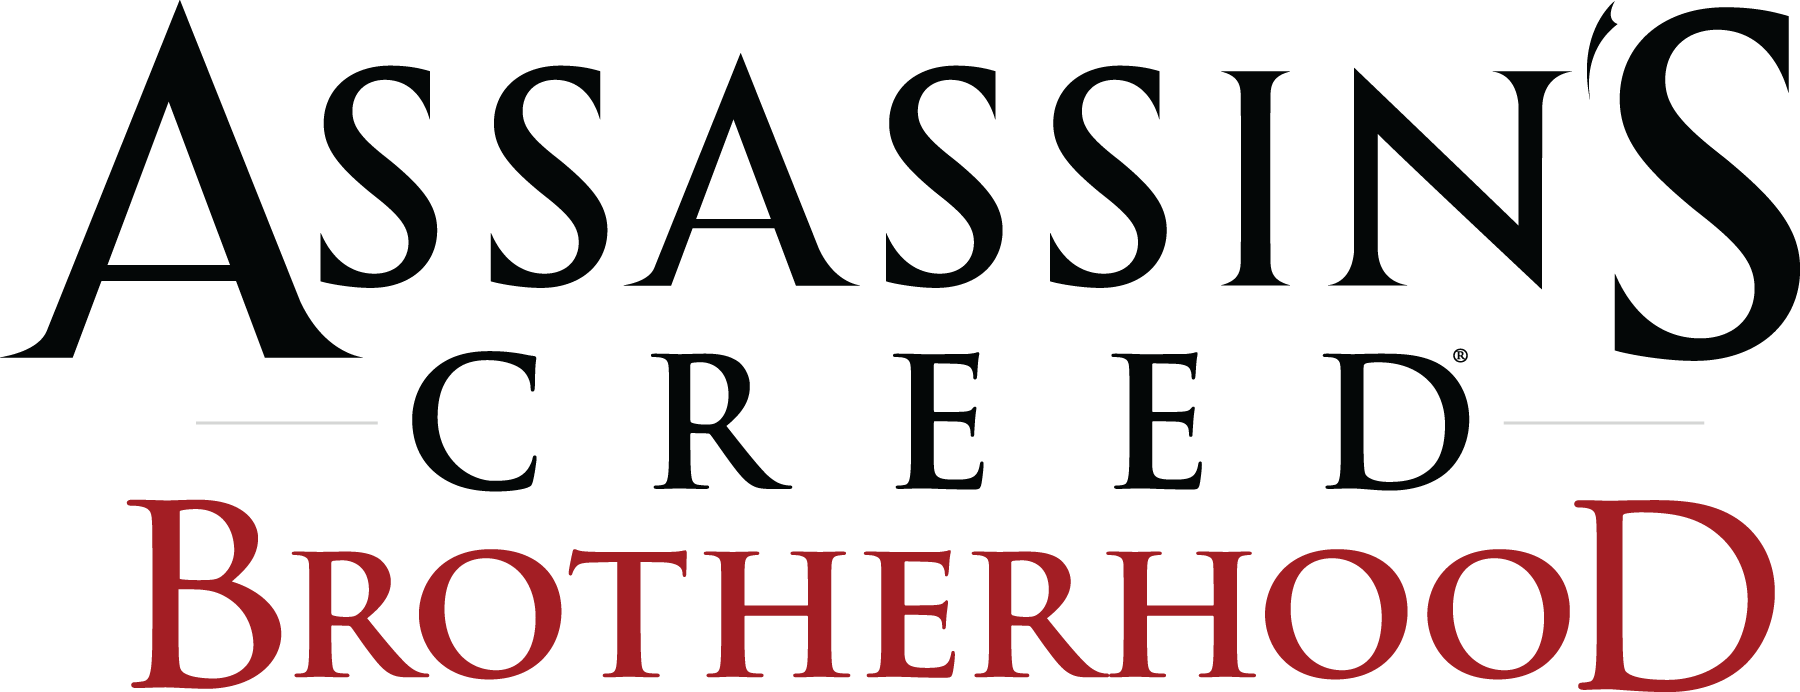 Logotipo do Assassin's Creed